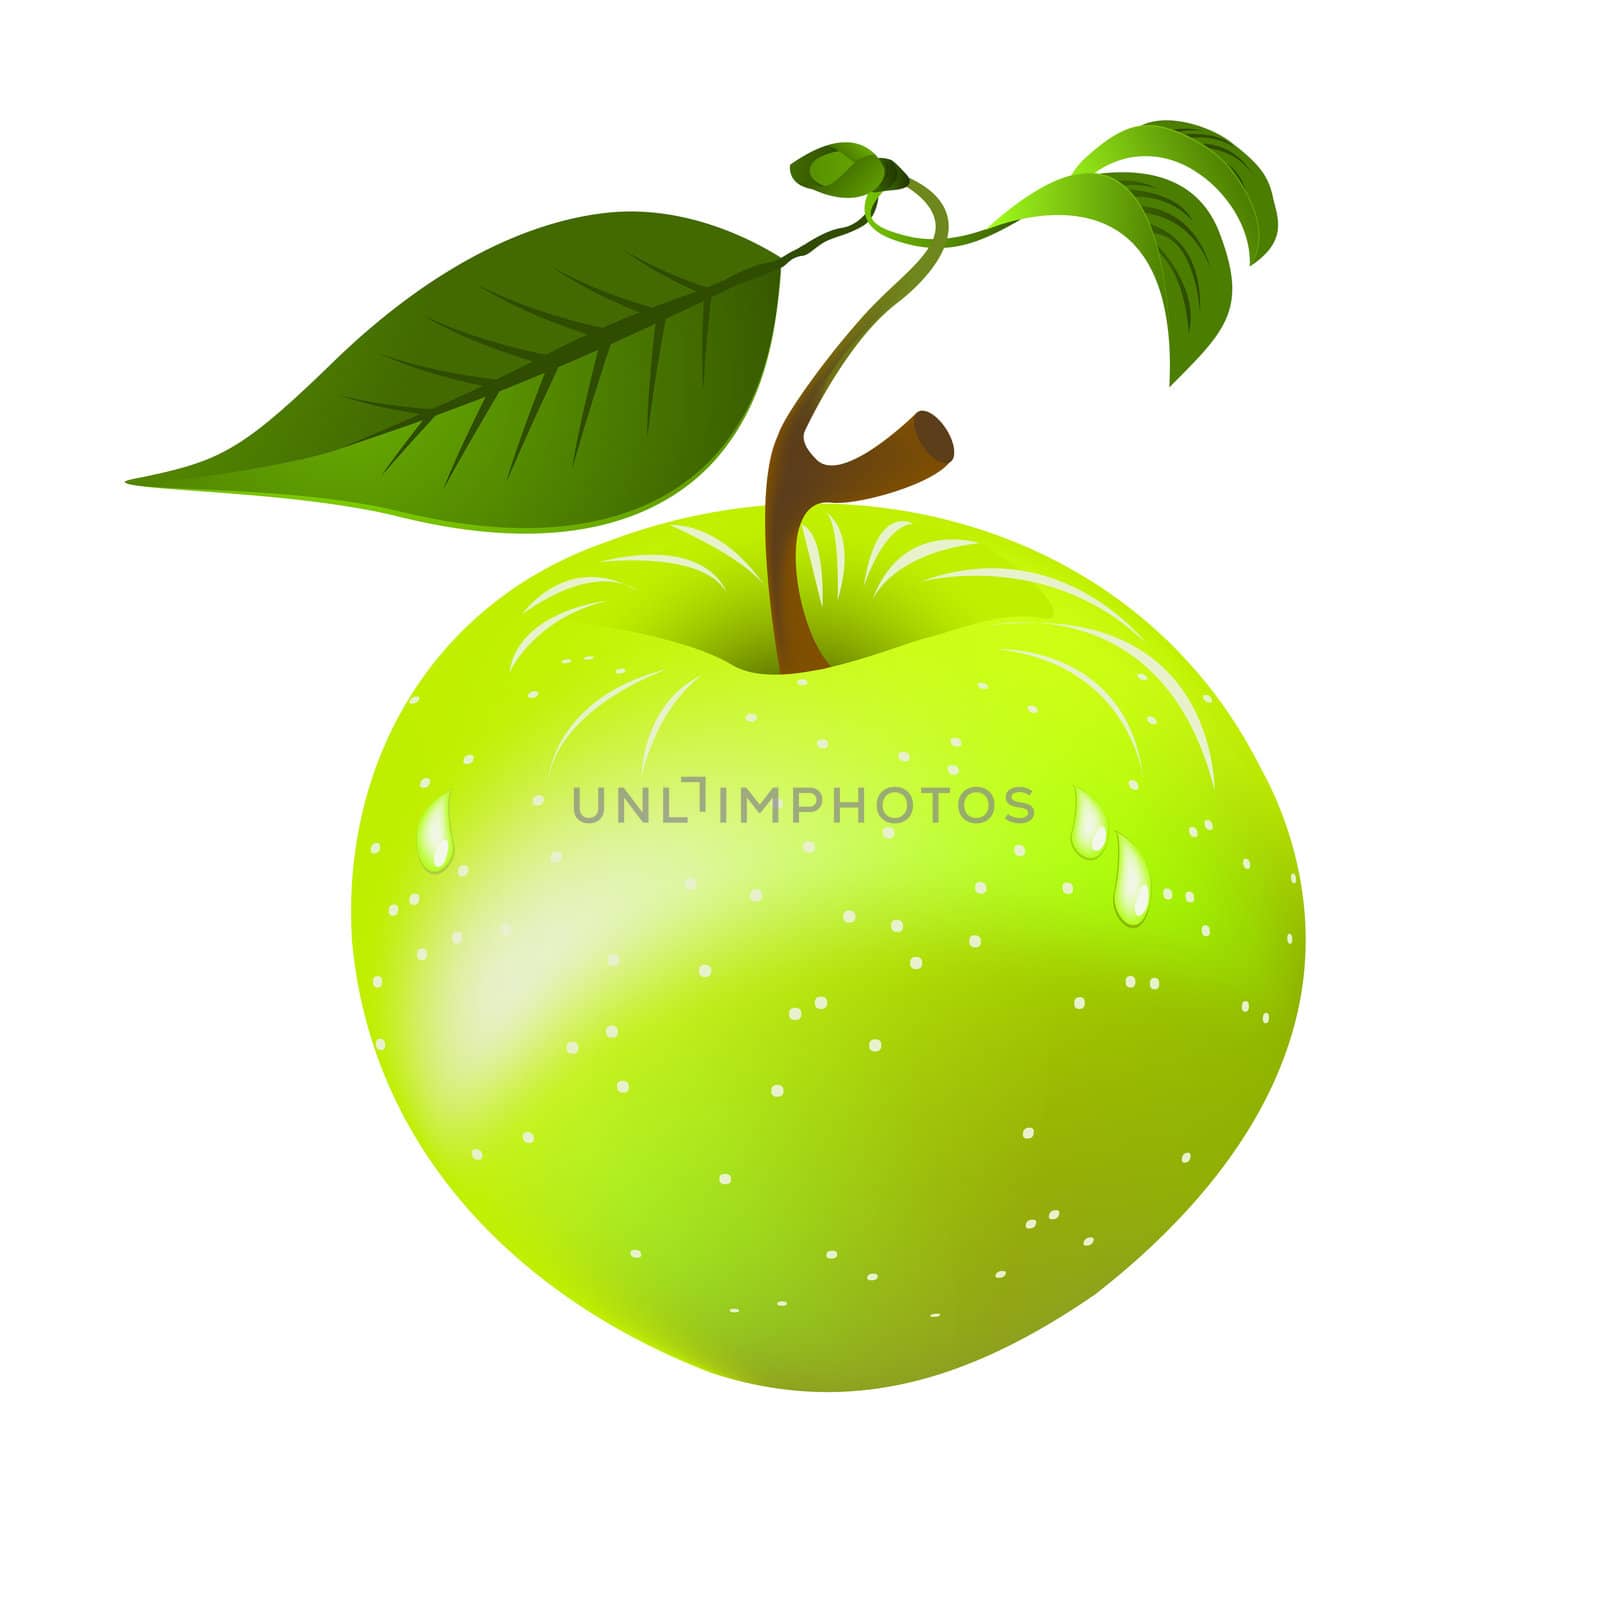 Green apple by Lirch